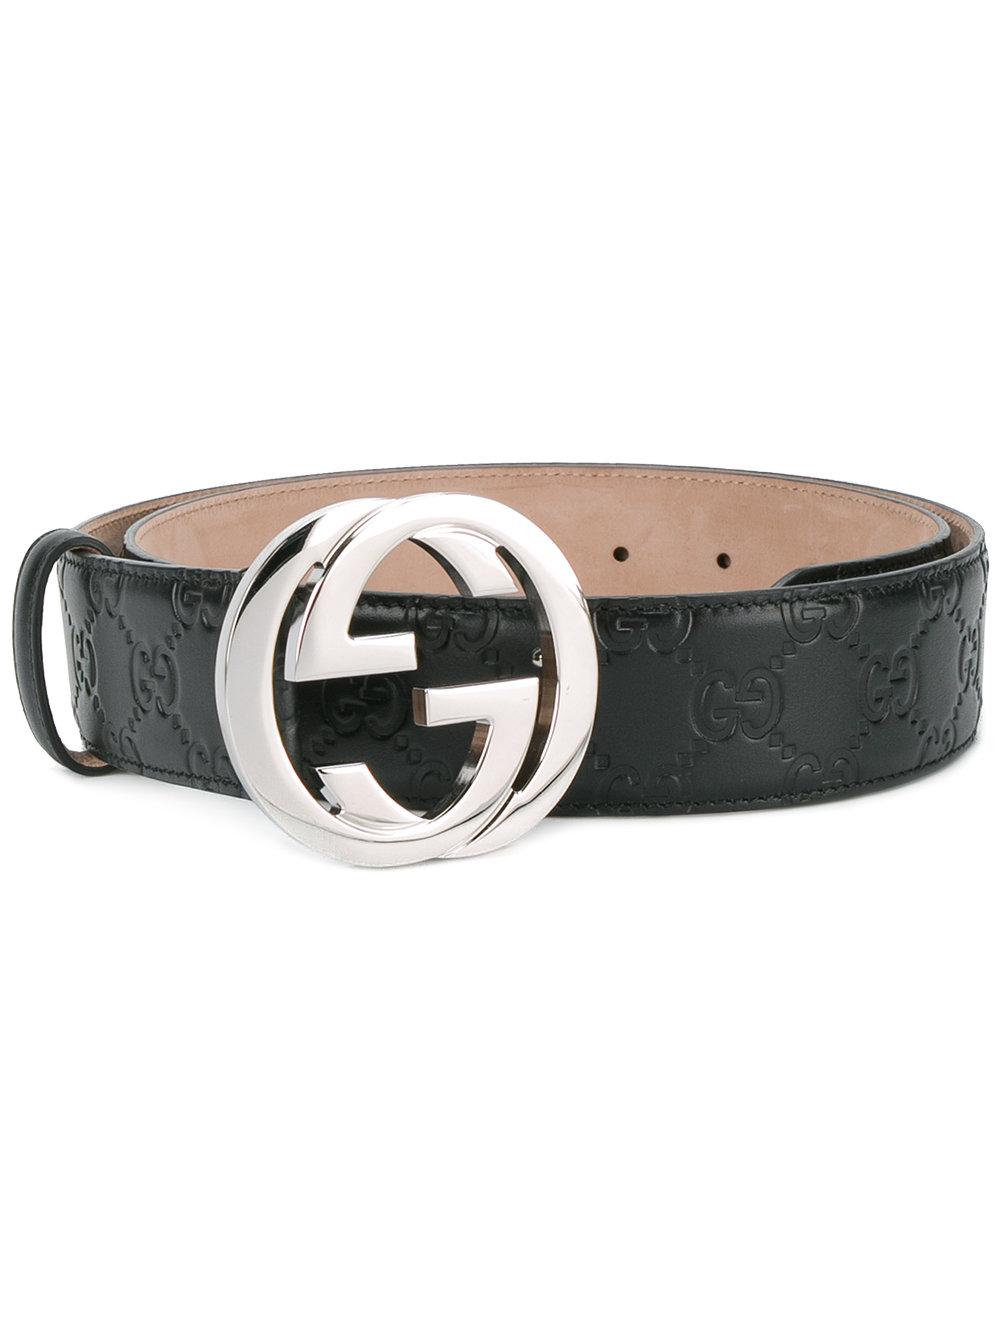 Lyst - Gucci Logo Buckle Belts in Black for Men